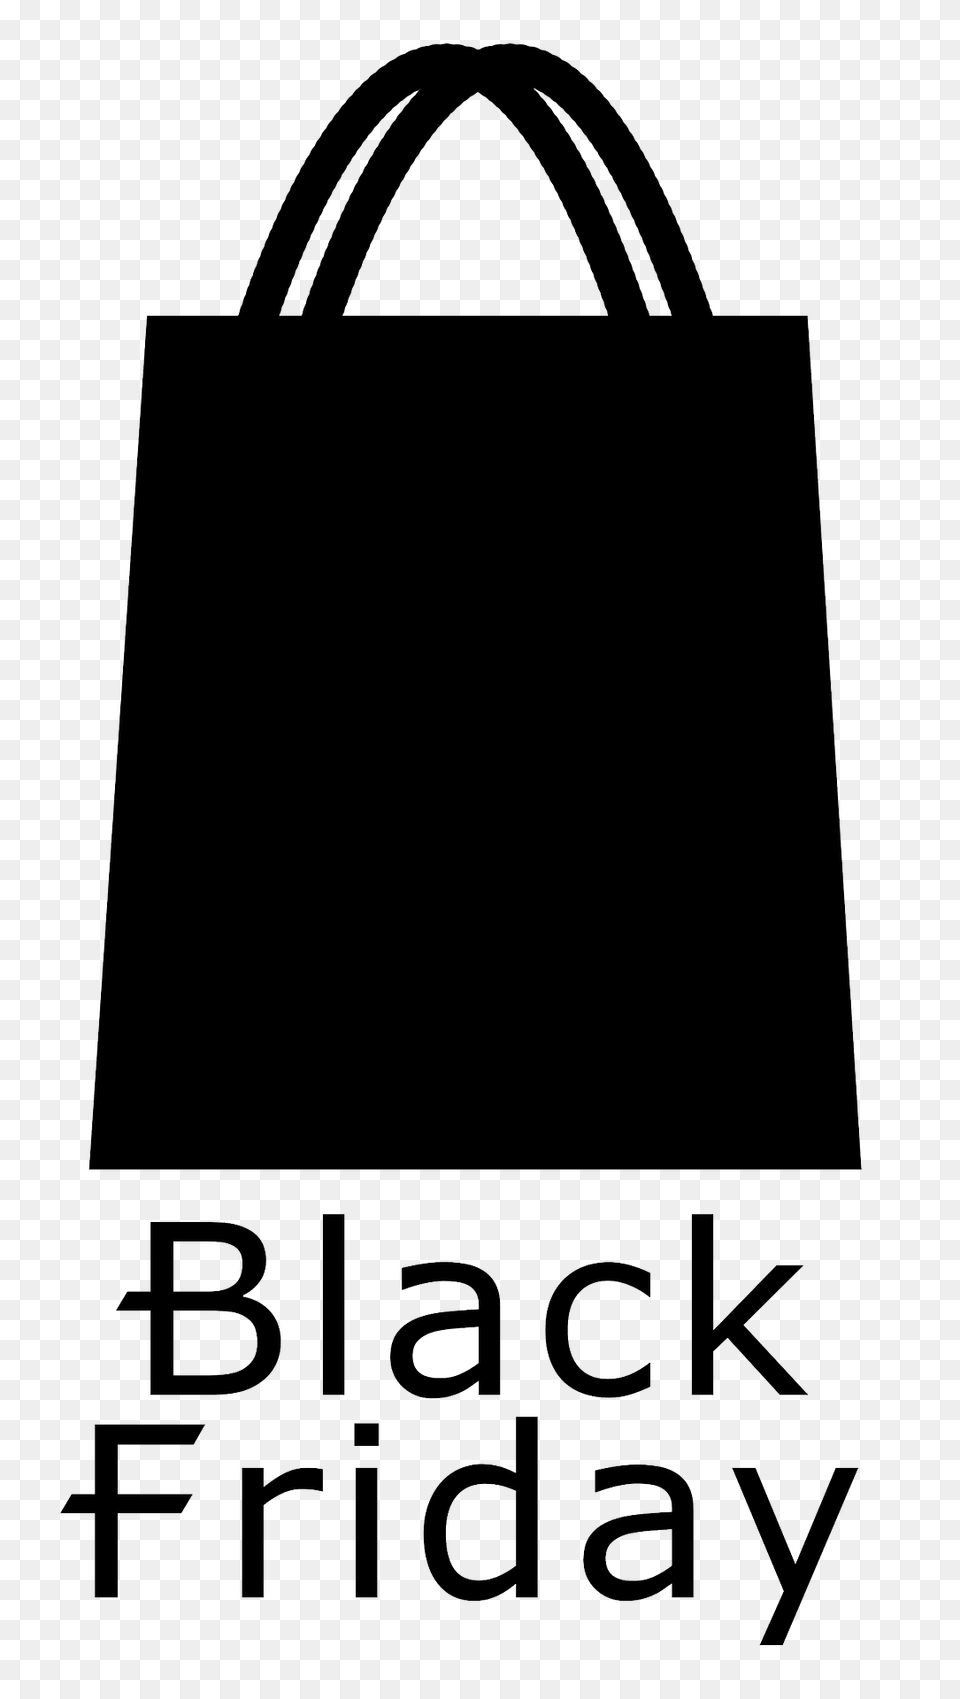 Black Friday Clipart, Accessories, Bag, Handbag, Tote Bag Free Transparent Png